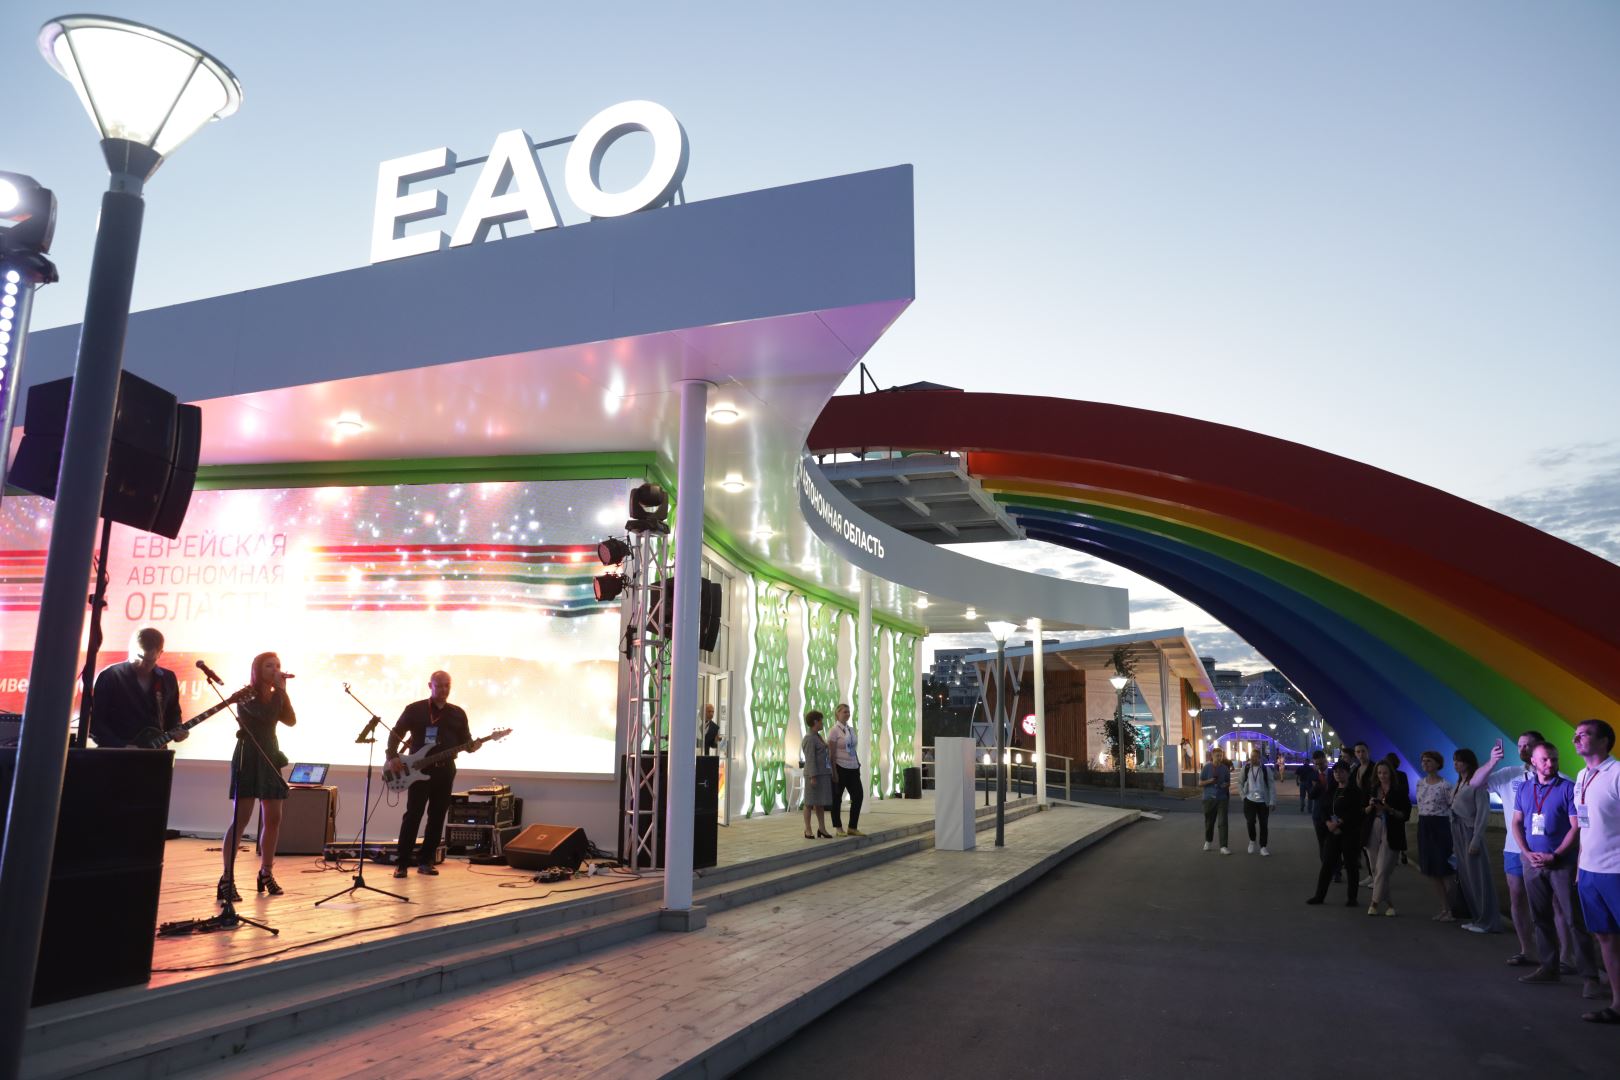 Павильон ЕАО готовится встречать гостей Восточного экономического форума во Владивостоке